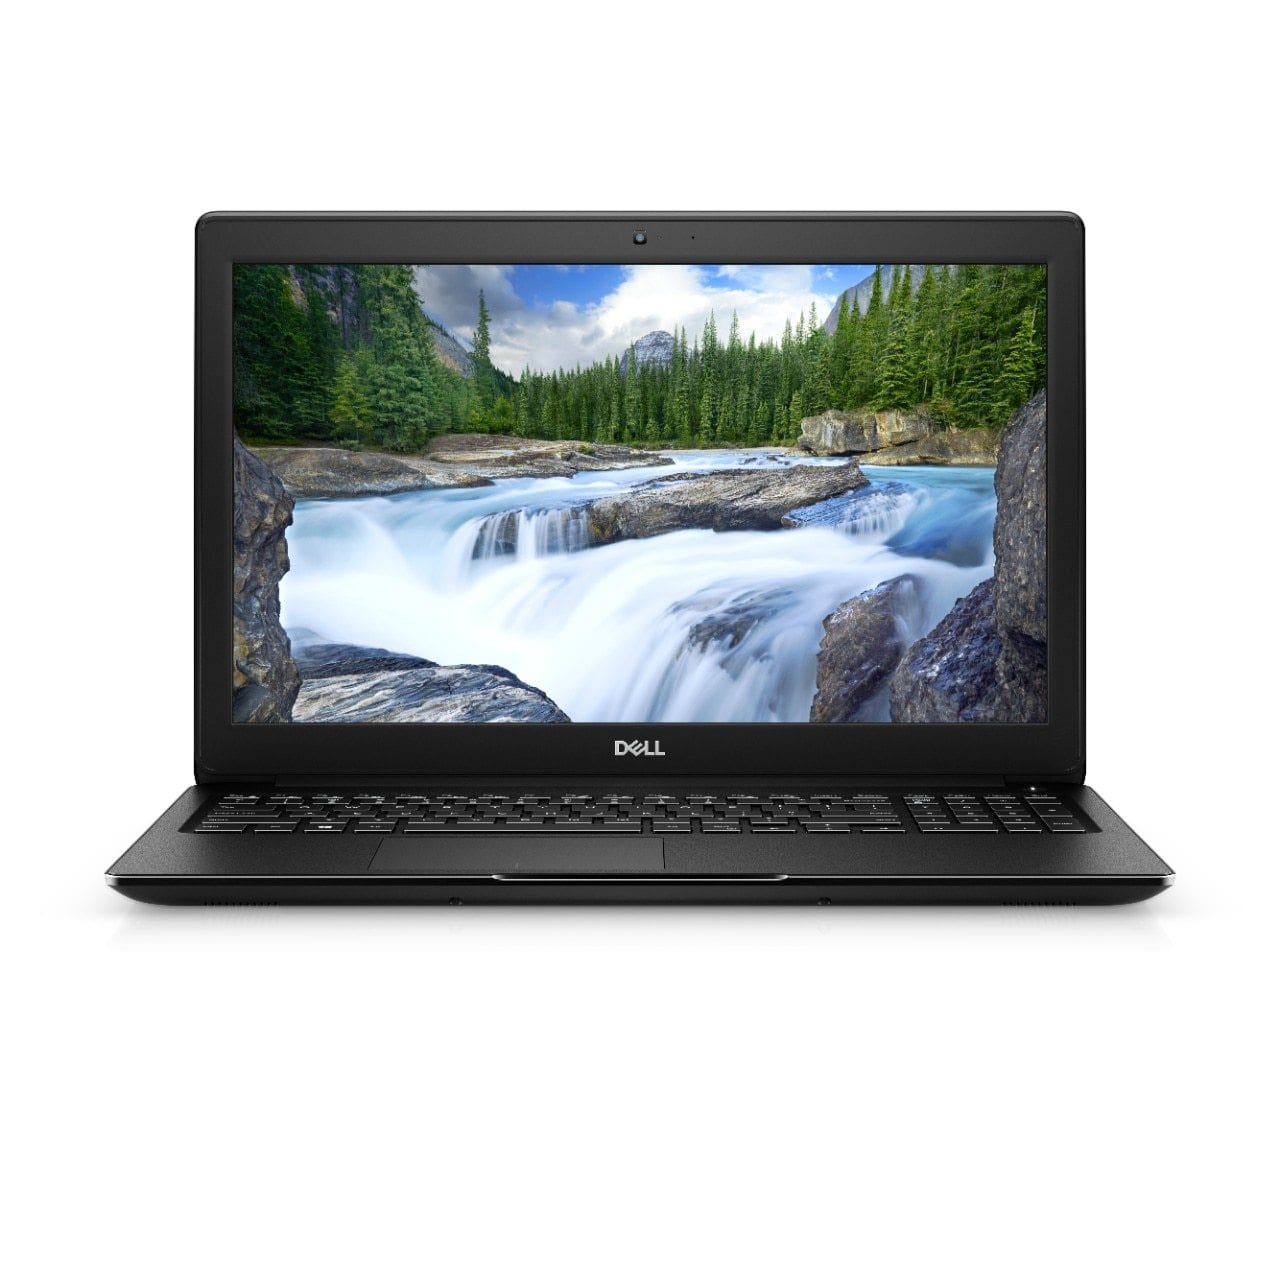 BSB-3GX2VIPDBJZ53S9S-REF-REF-LAP-DL 2019 Dell Latitude 3500 Laptop 15.6" - i5 - i5-8265U - Quad Core 3.9Ghz - 128GB SSD - 4GB RAM - 1366x768 HD - Windows 10 Pro Black